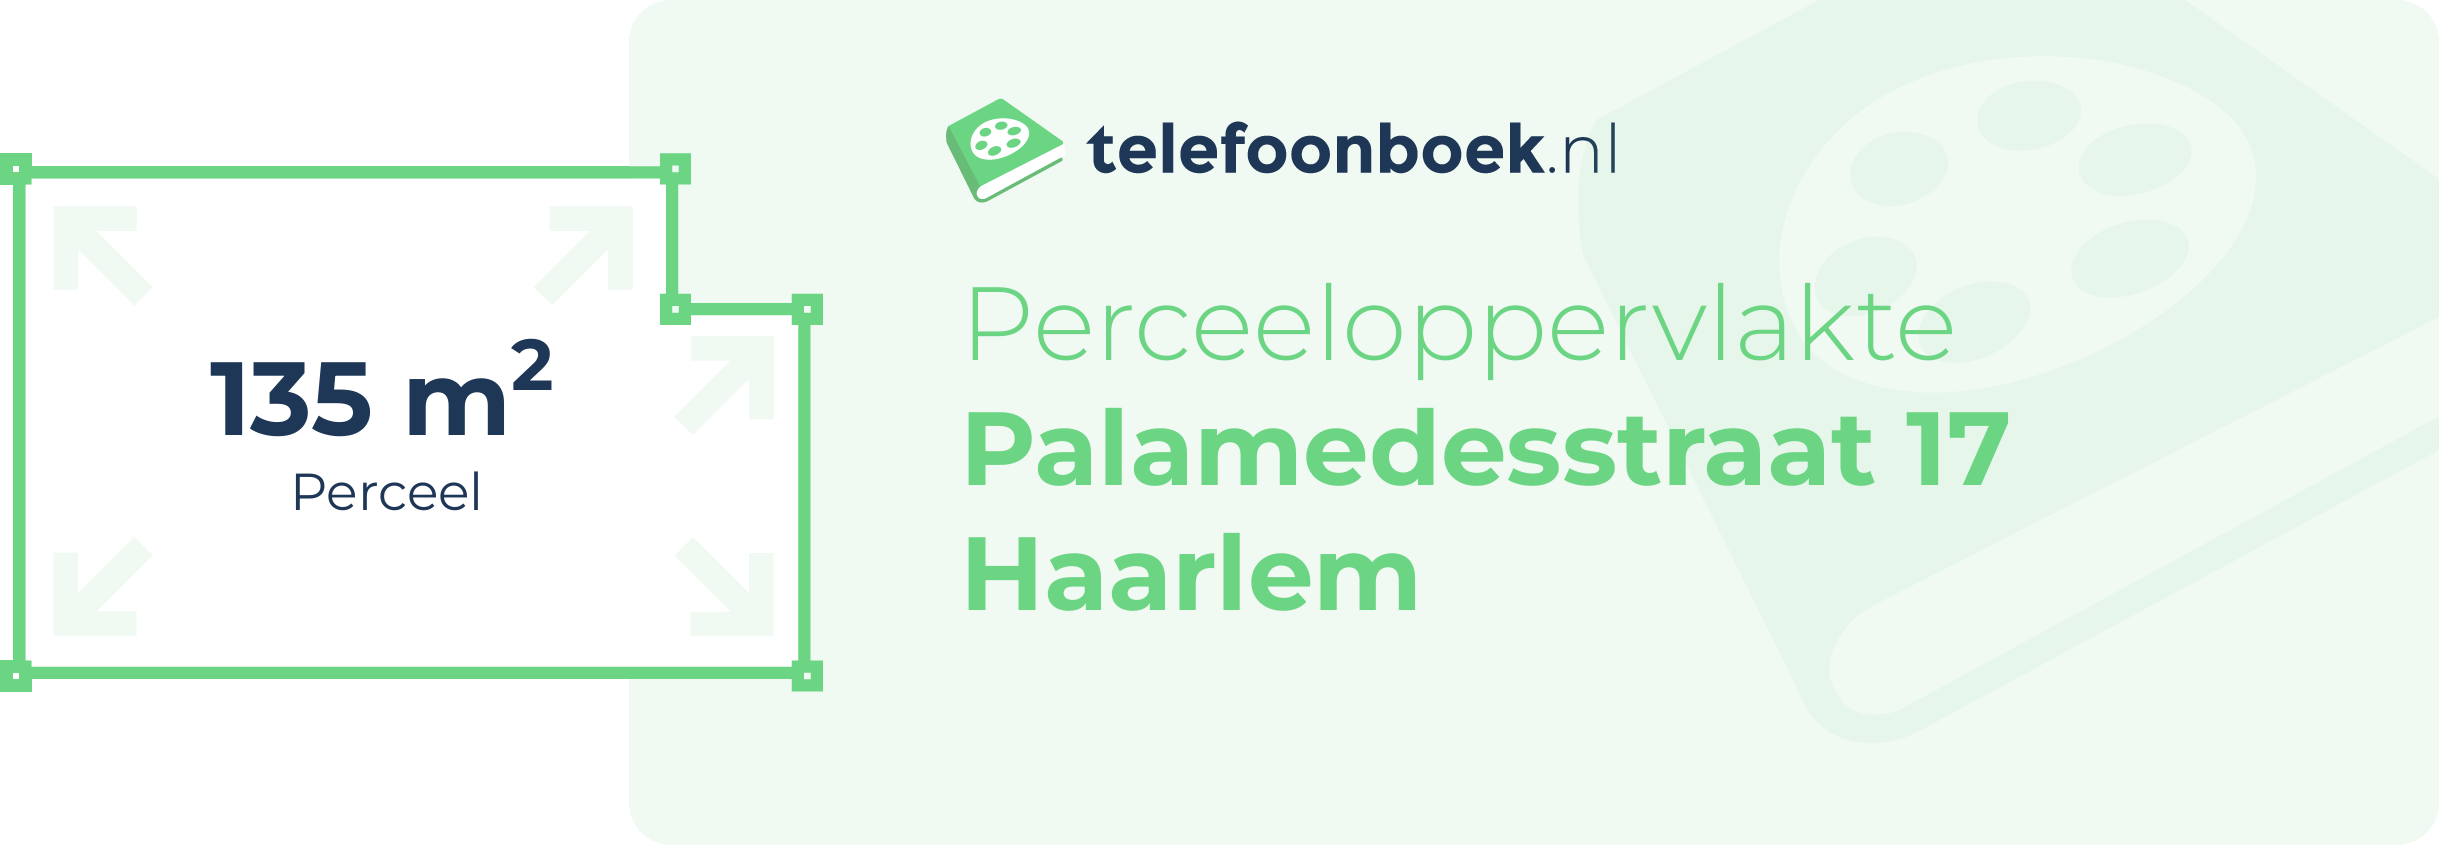 Perceeloppervlakte Palamedesstraat 17 Haarlem